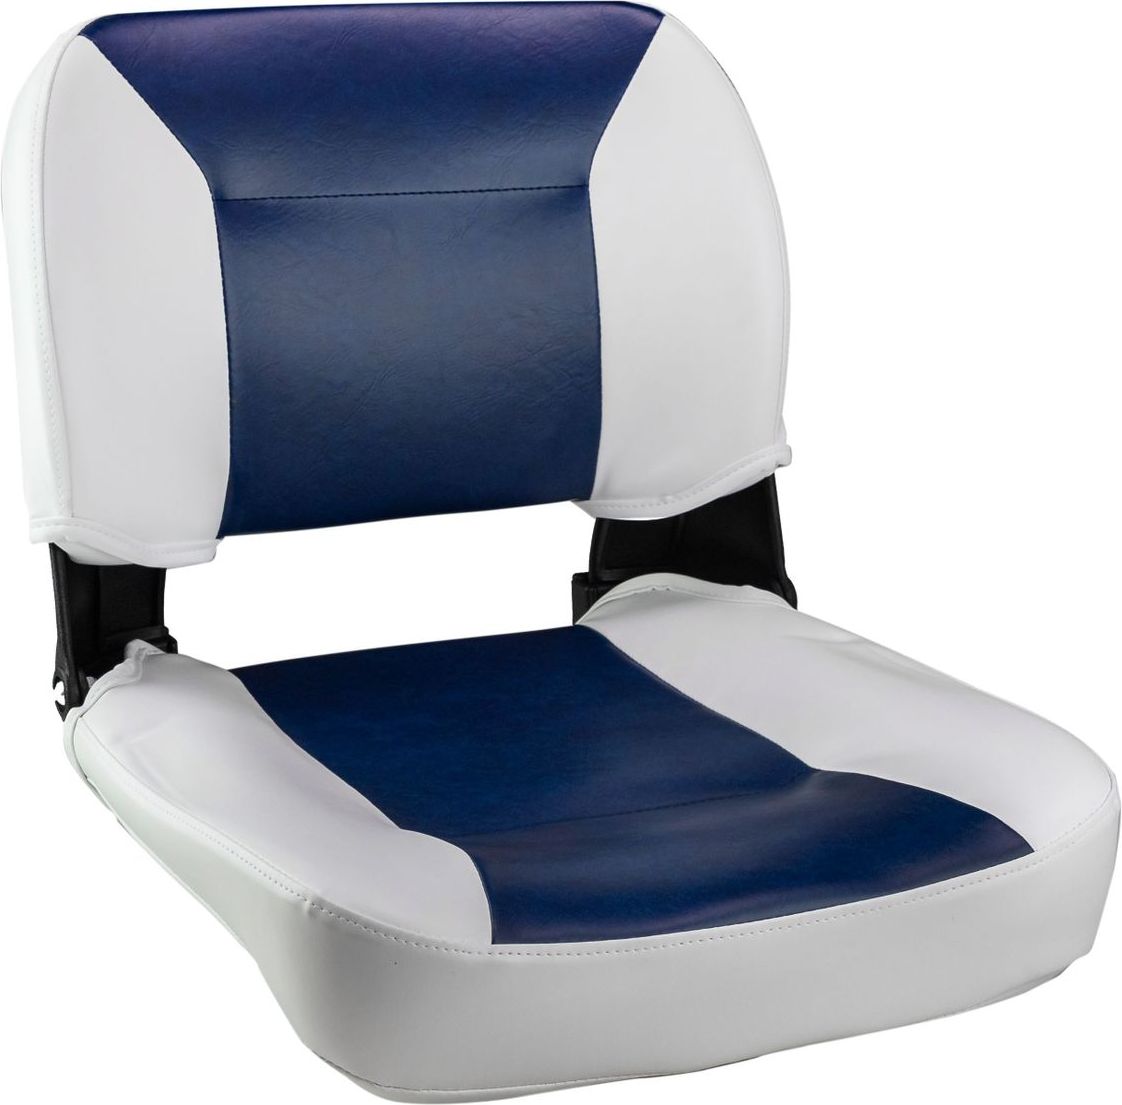 Кресло складное, цвет белый/синий (упаковка из 2 шт.) C12510WL_pkg_2 кранец ocean надувной 640х190 синий упаковка из 8 шт 72366 pkg 8